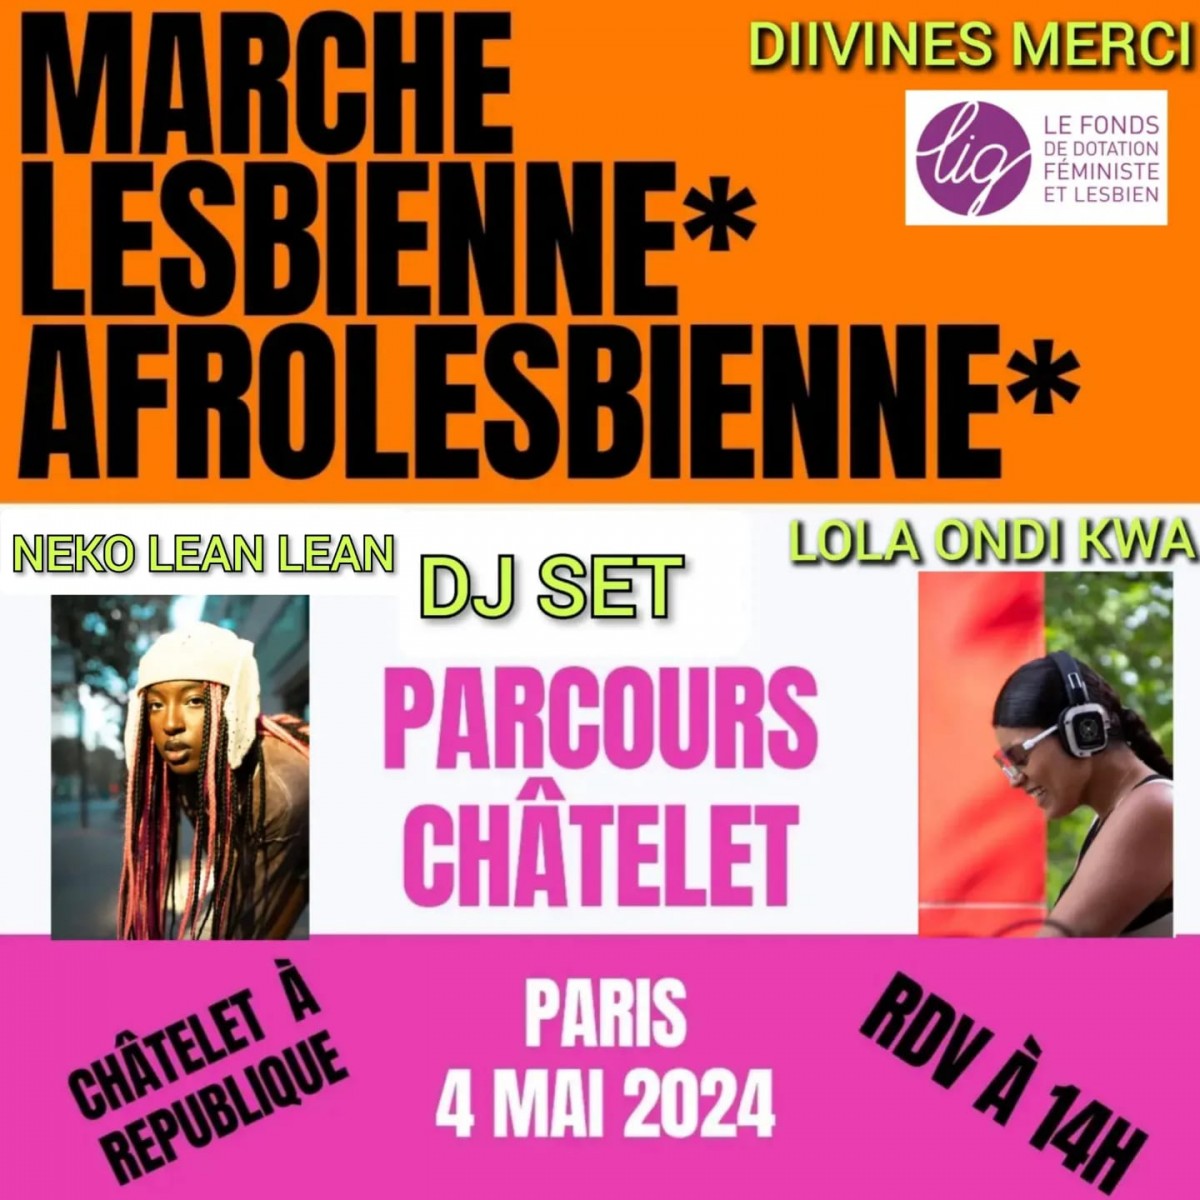 Marche lesbienne Paris 4 mai 2024 : Luttes et expressions de la communauté LGBT+